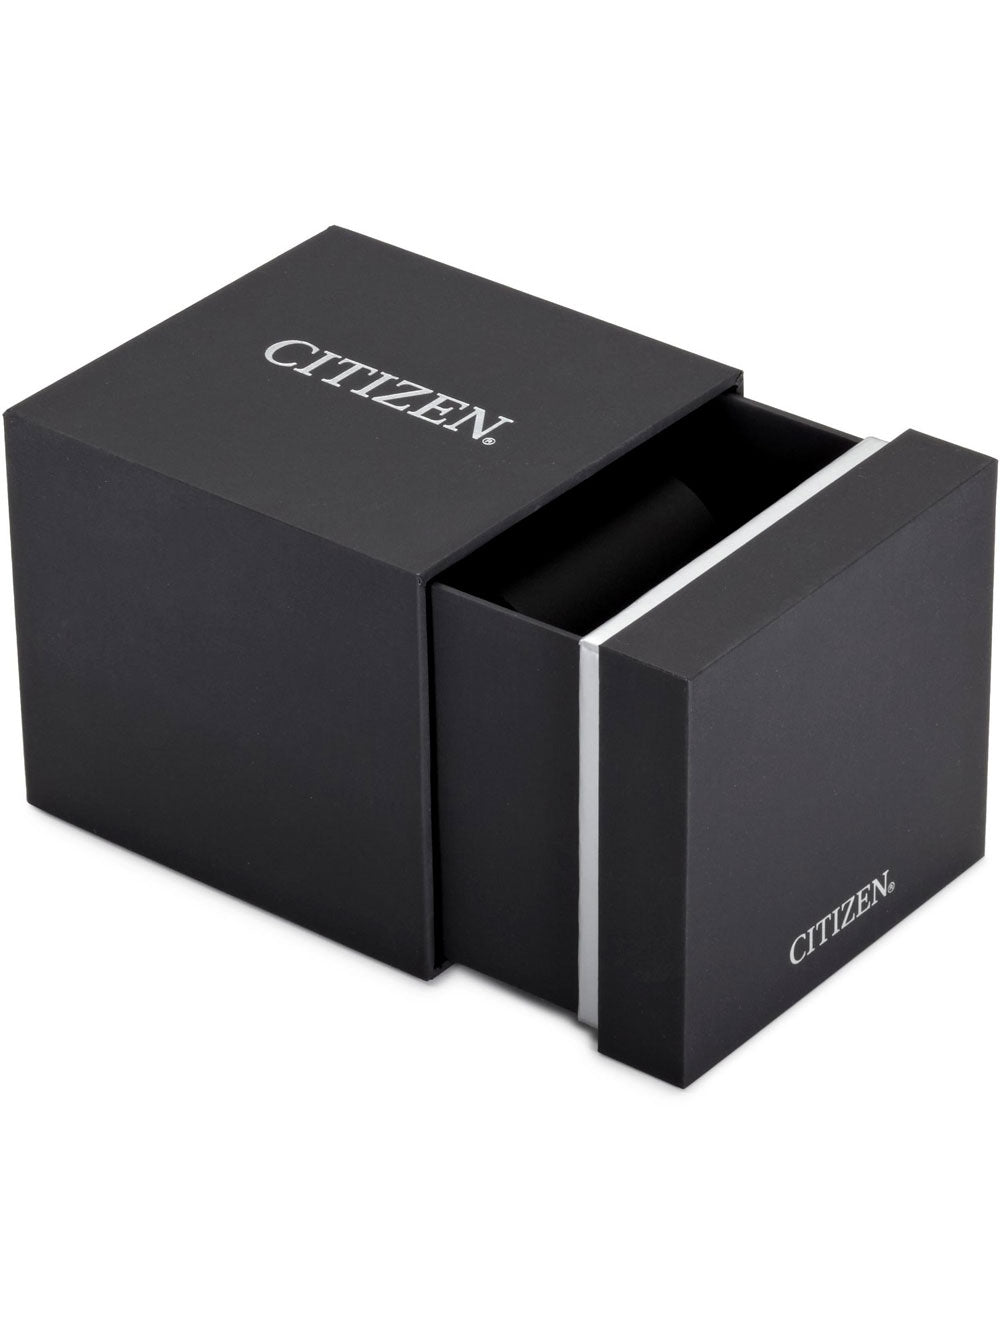 Citizen Eco-Drive Chronograph CA0695-17E 44mm 10ATM